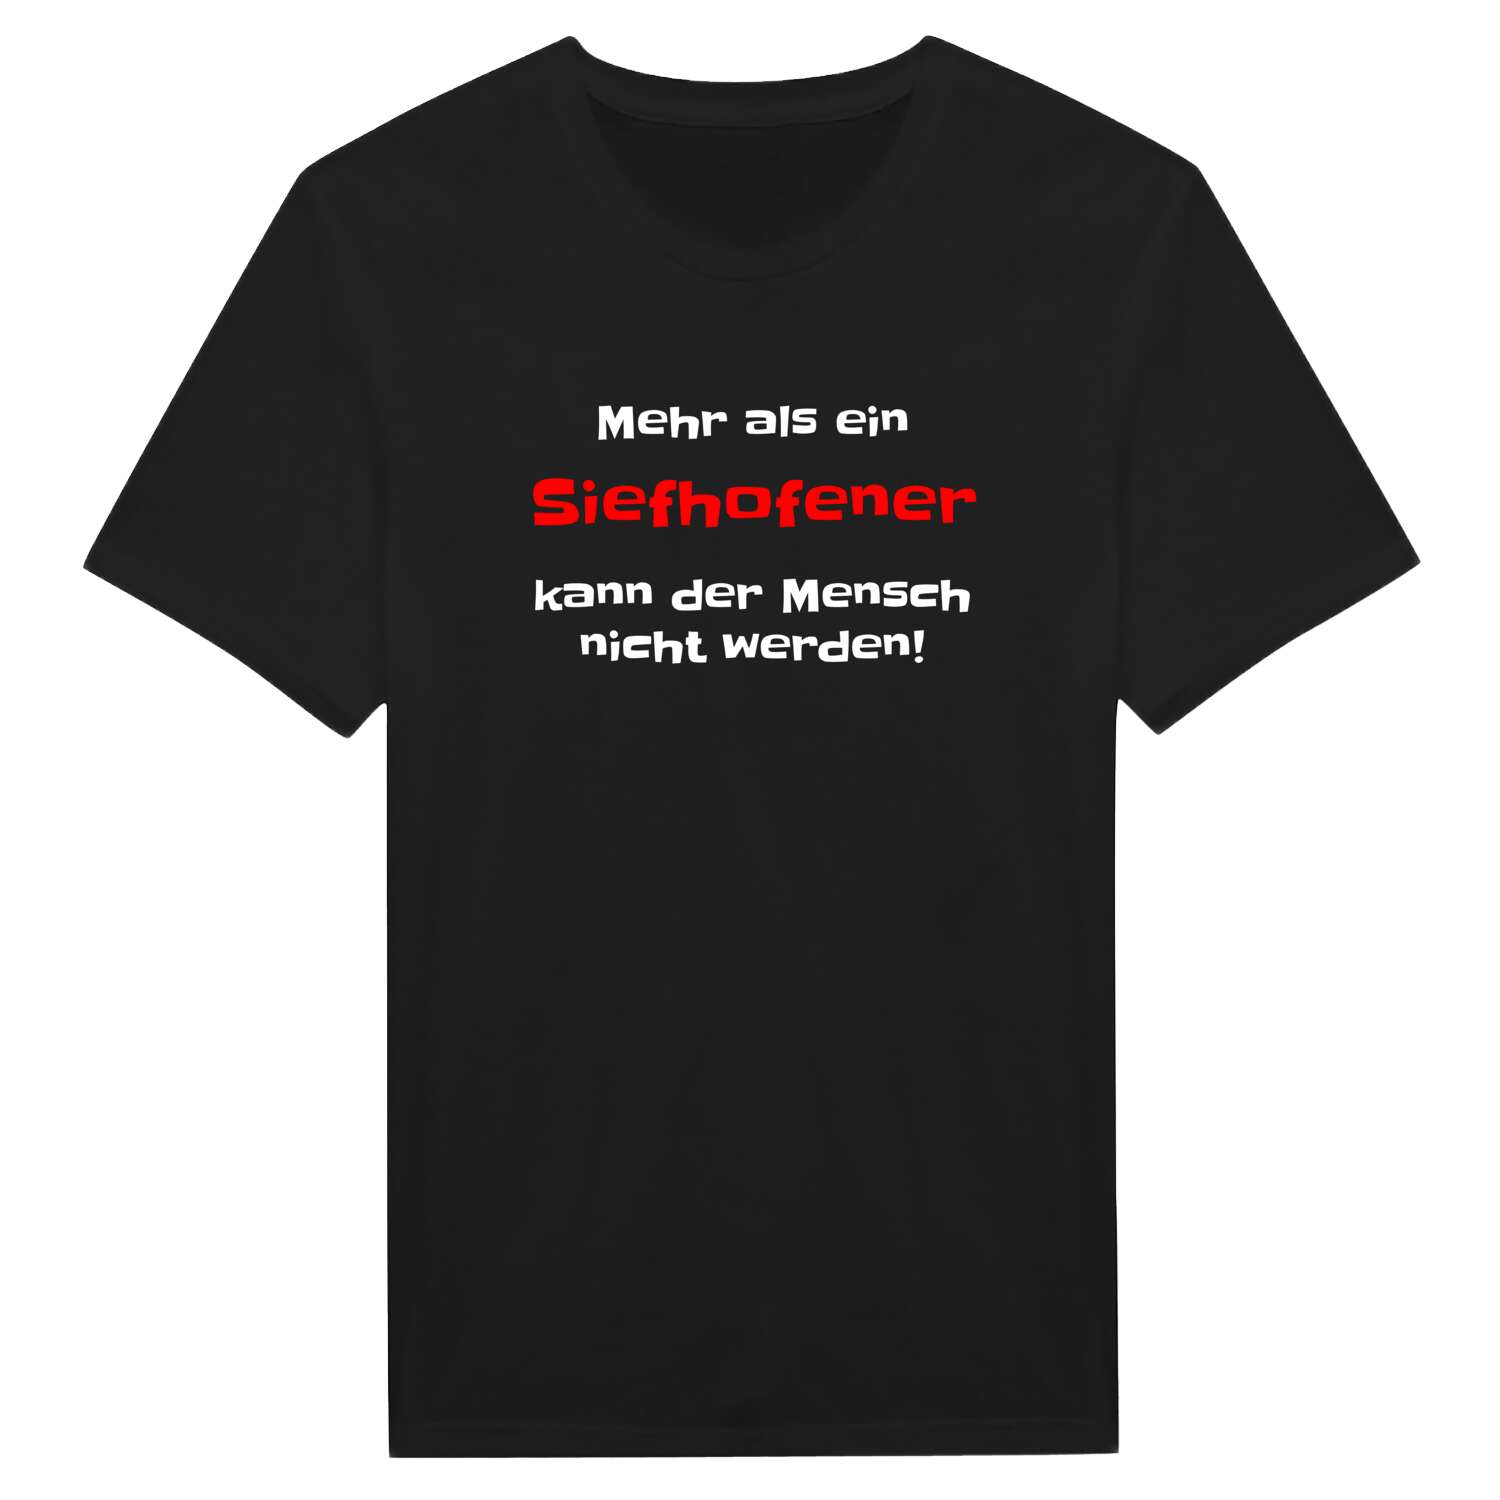 Siefhofen T-Shirt »Mehr als ein«